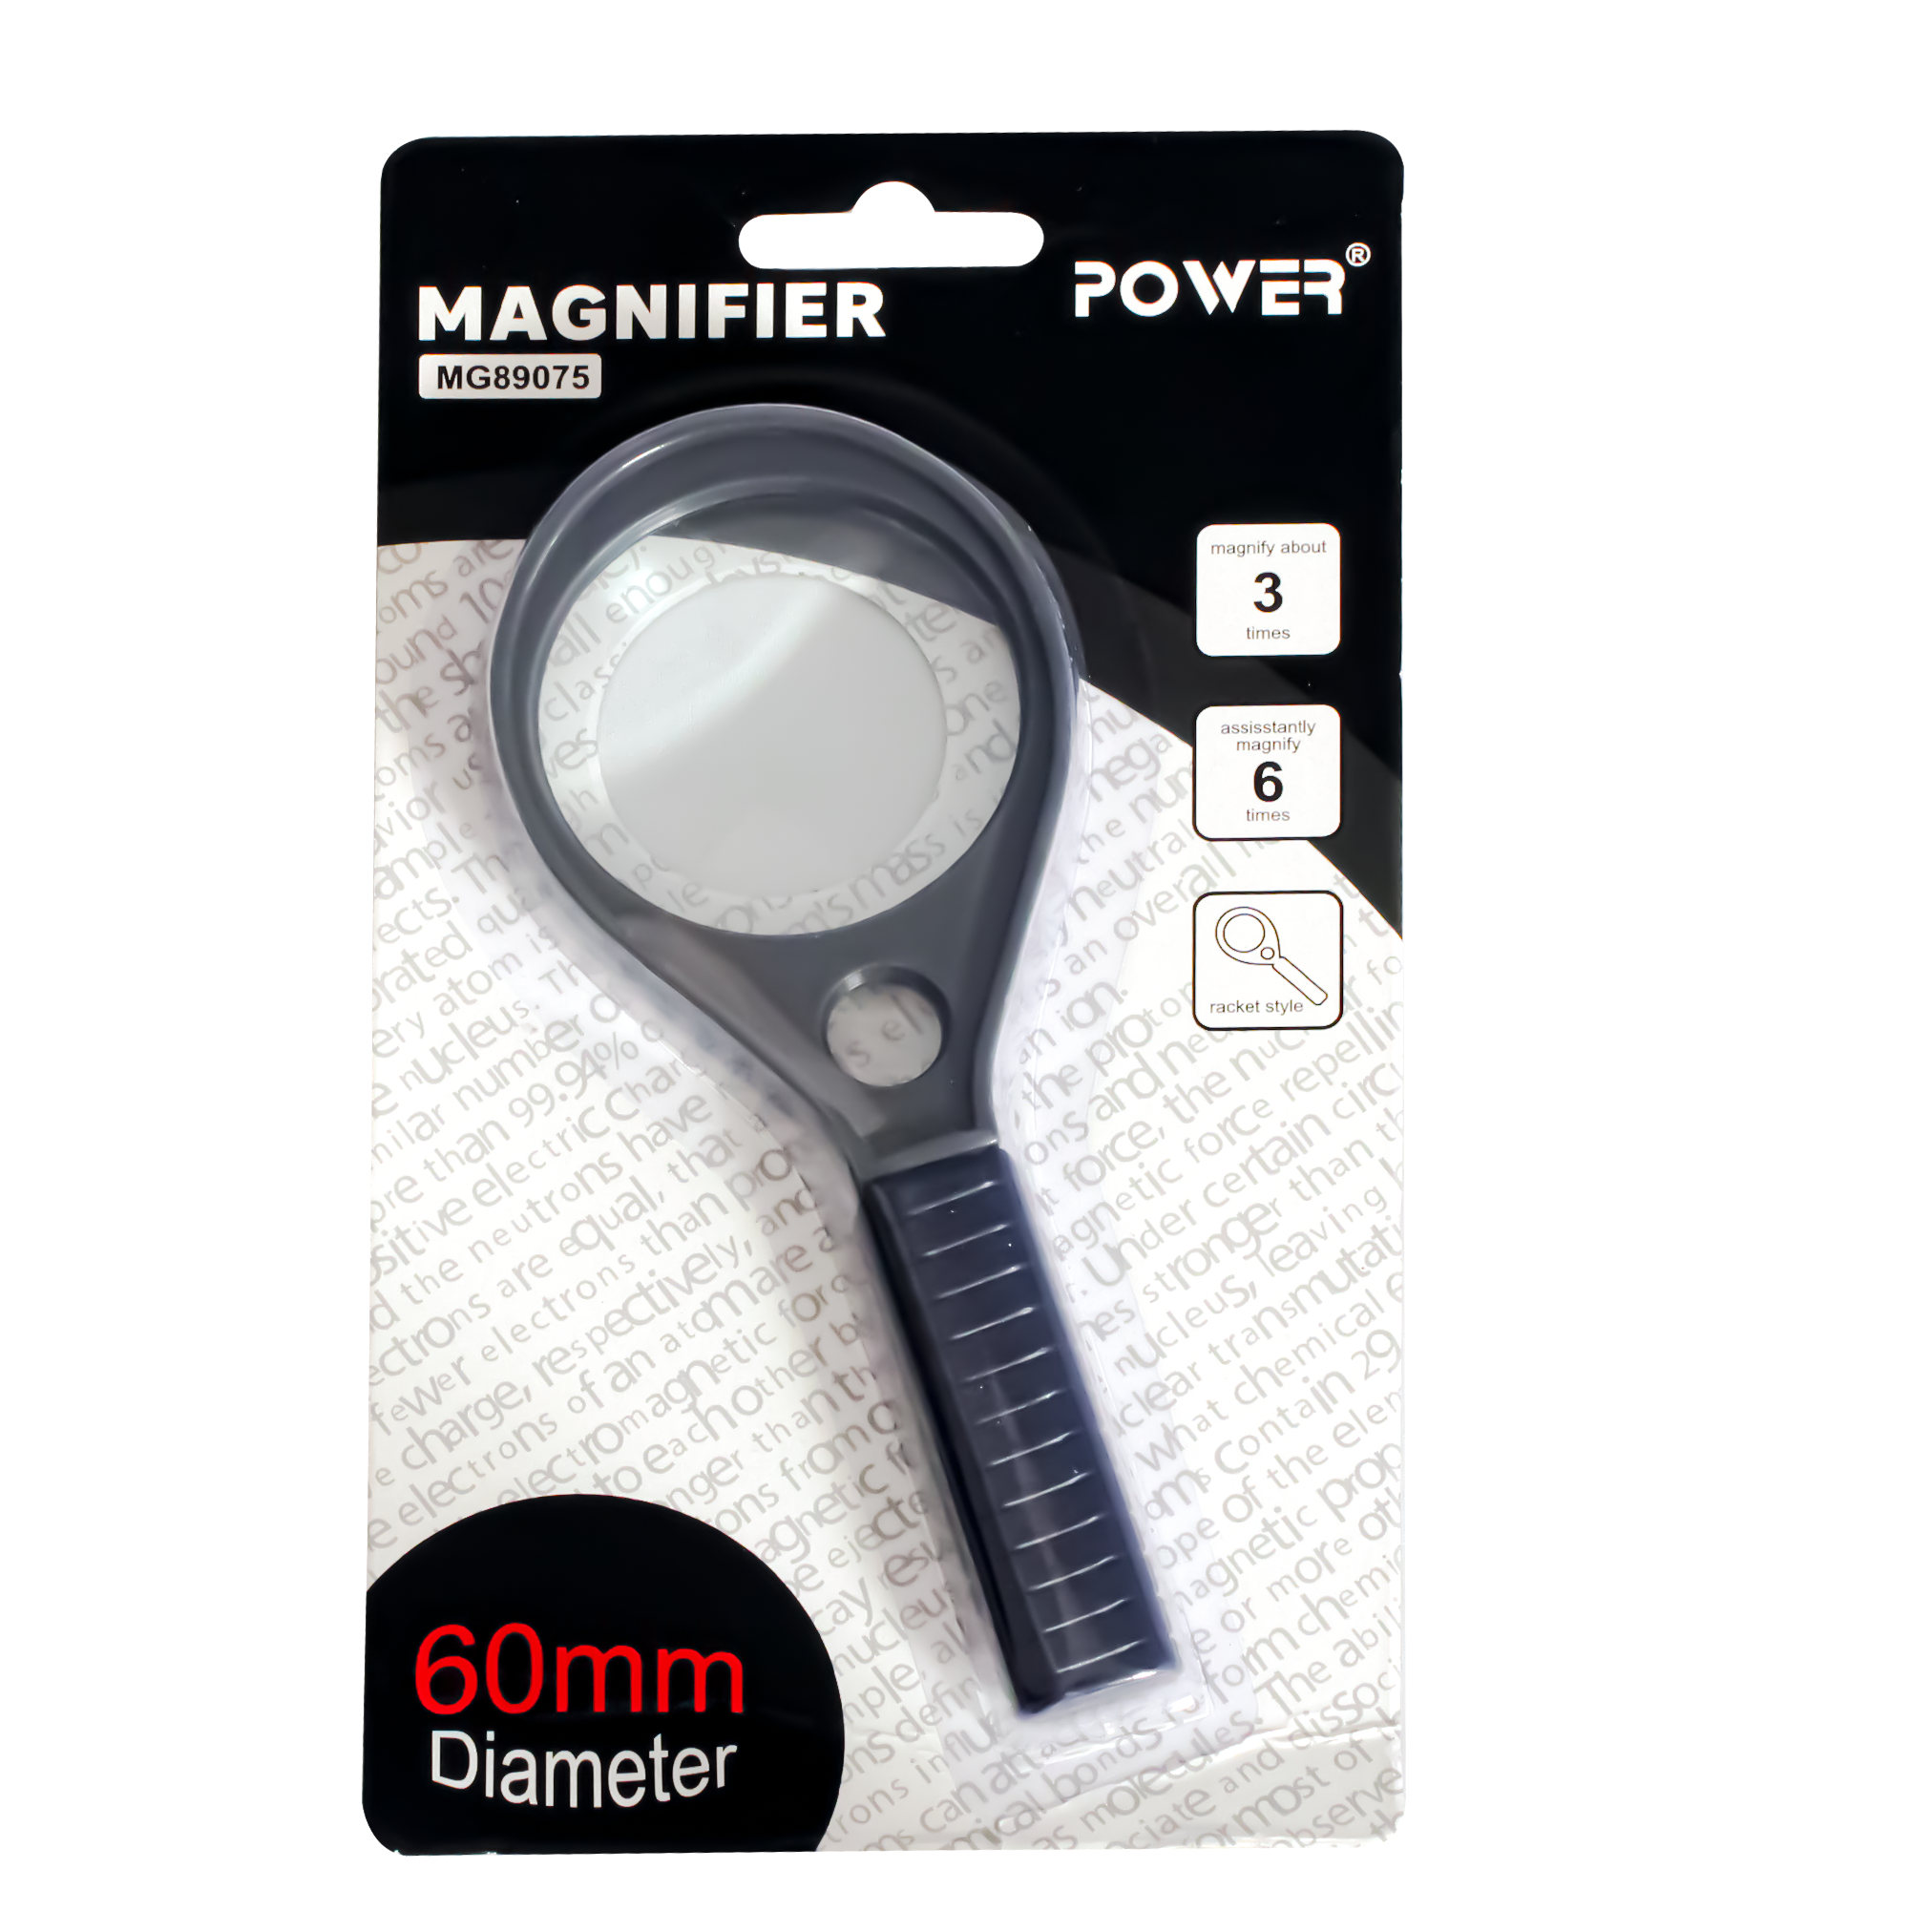 Power Magnifier MG 89075 60 mm Diameter